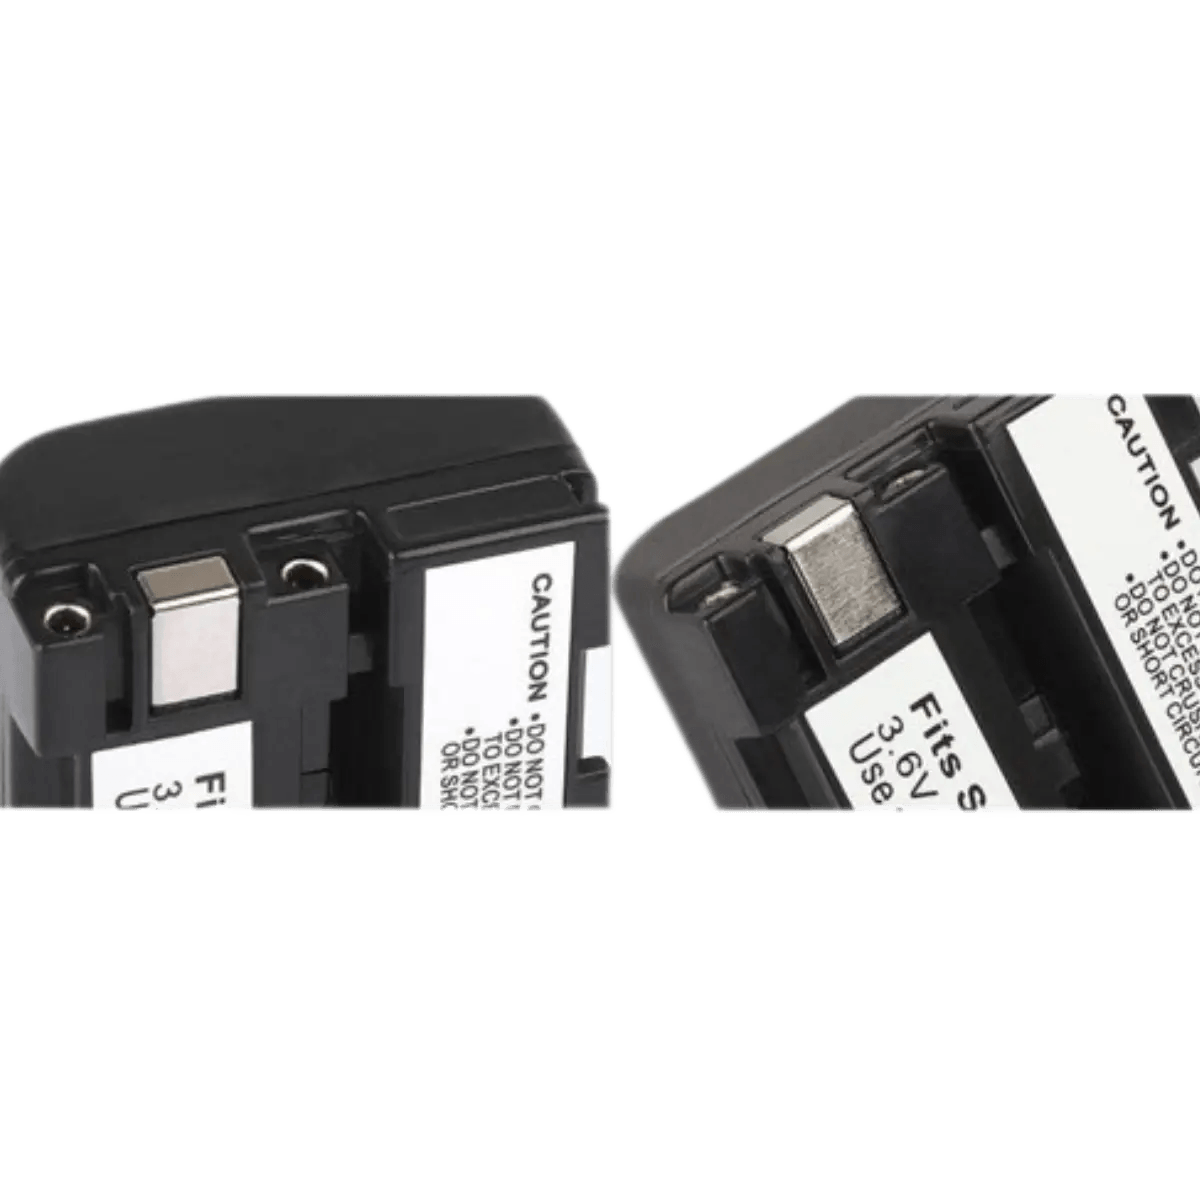 Batterie NP-FS10, NP-FS11 pour Appareil Photo Sony